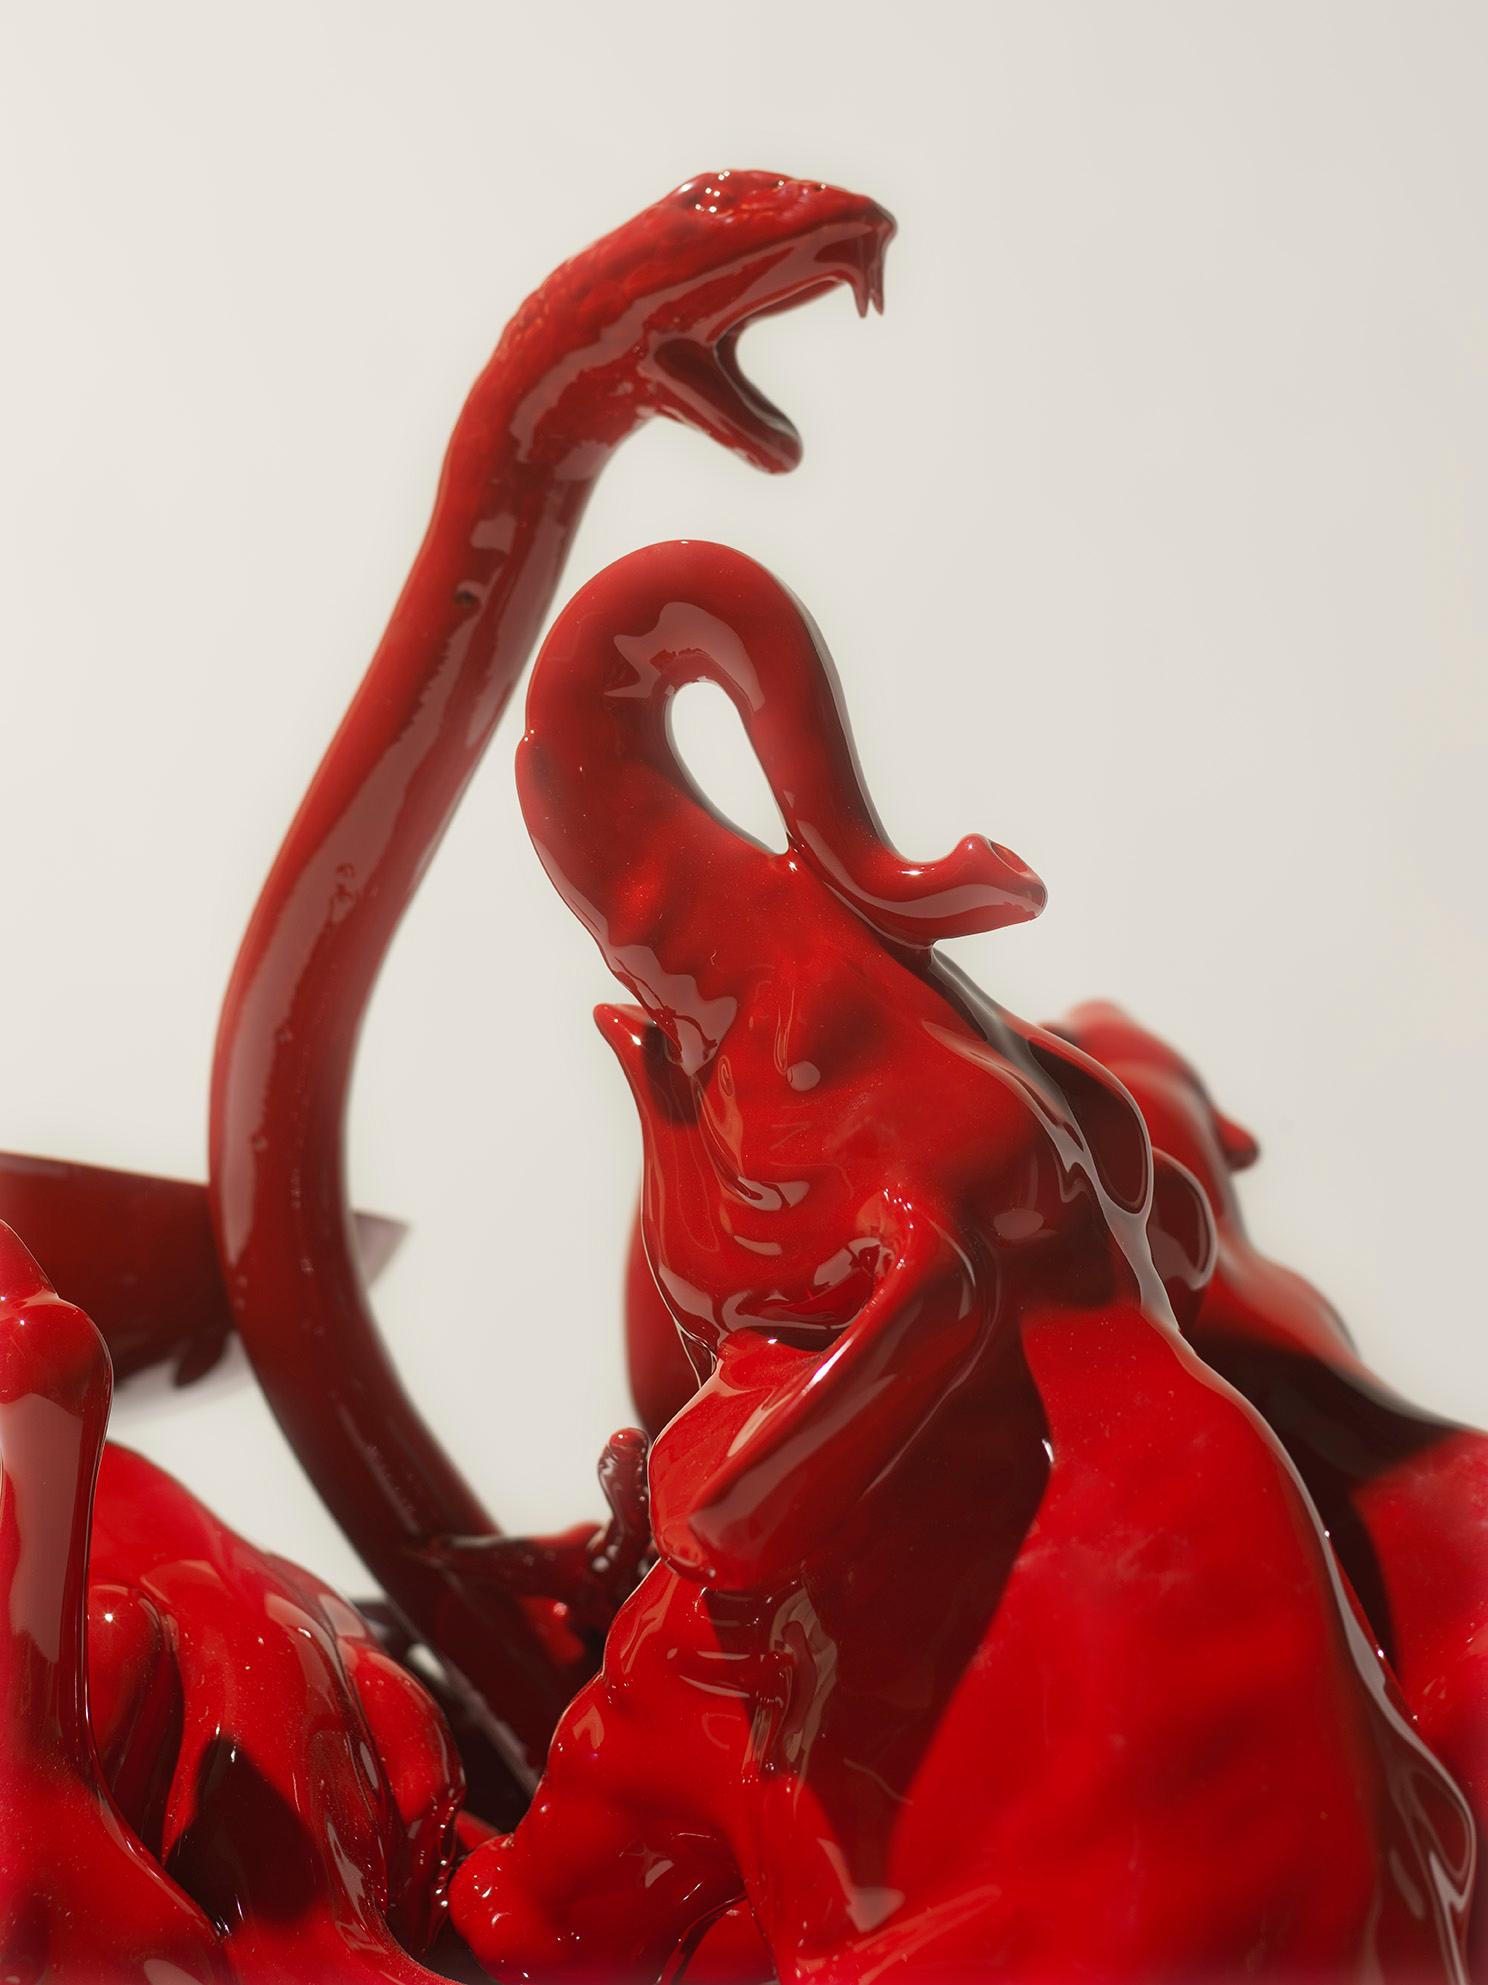 Italian 21st Century Italy Red Fox Sculpture Ceramica Gatti designer A. Anastasio For Sale